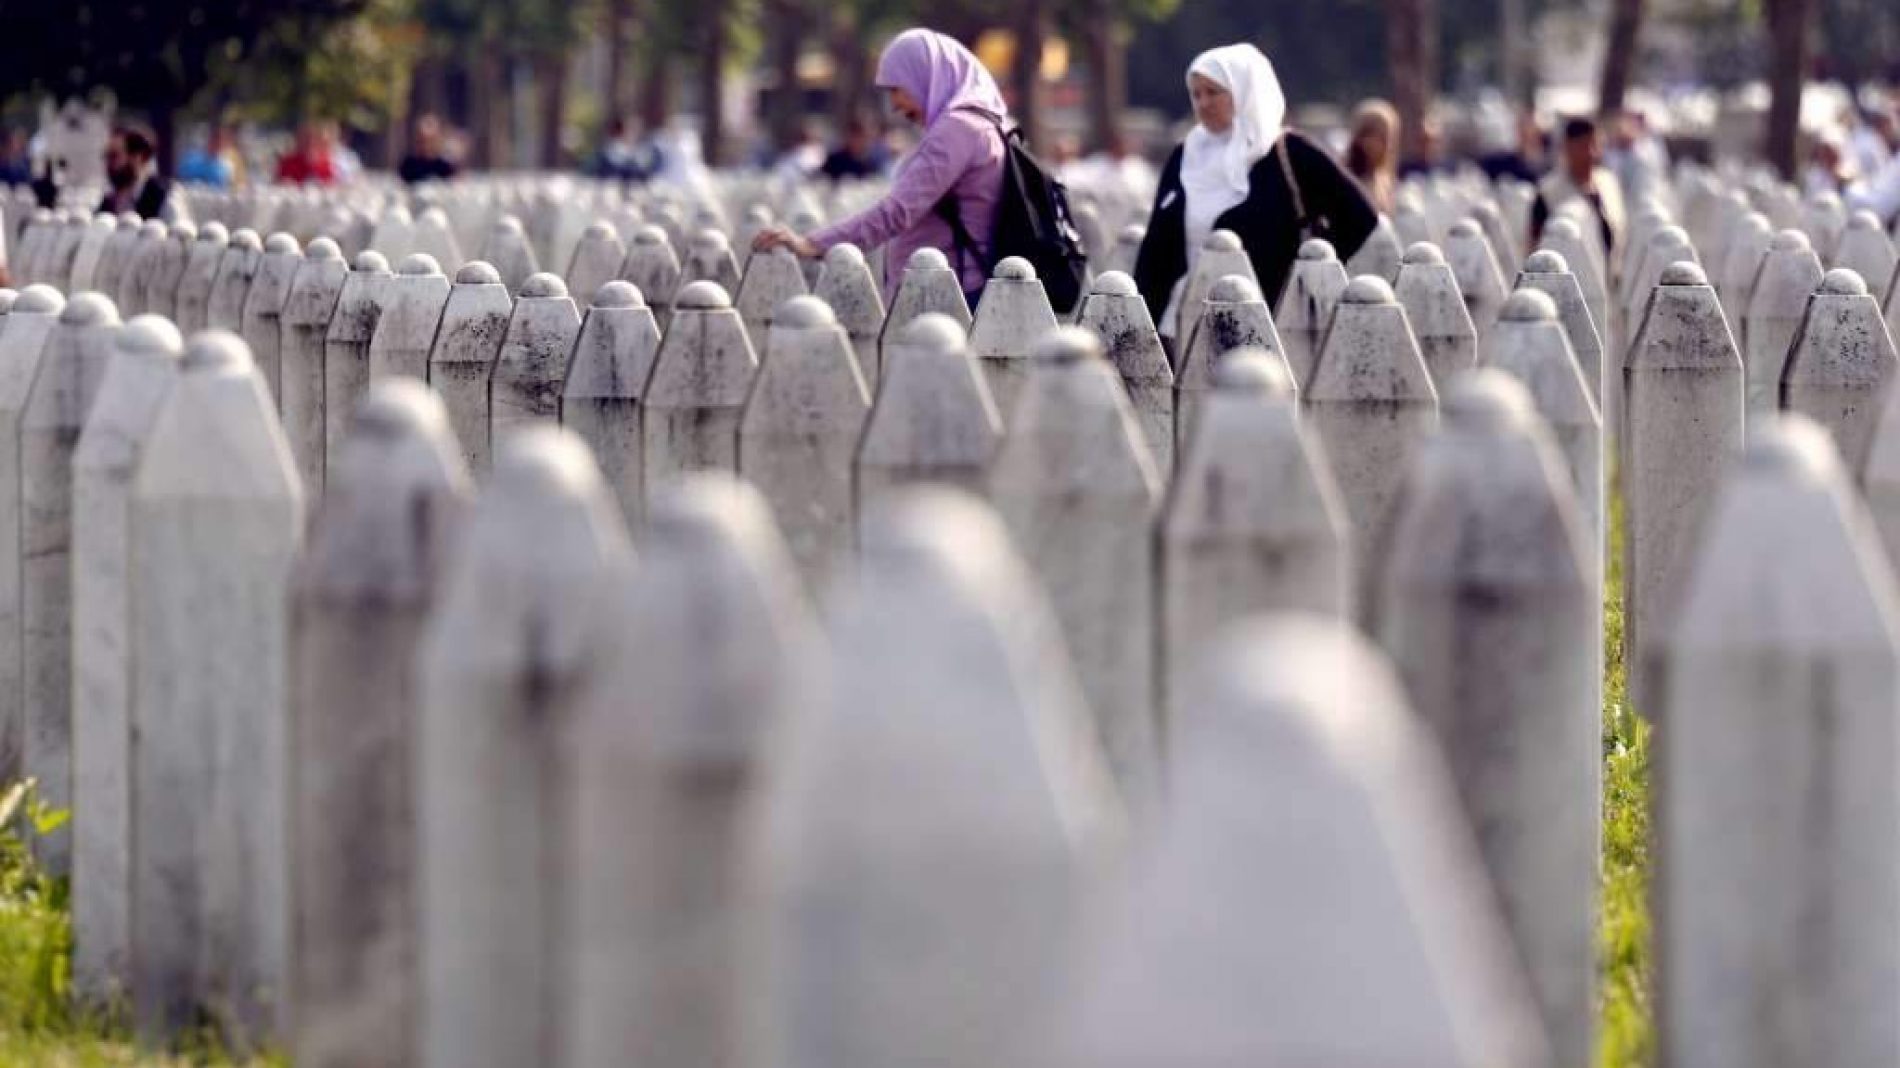 Žrtve i svjedoci genocida: Sramna odluka Suda o puštanju na slobodu osumnjičenih za genocid